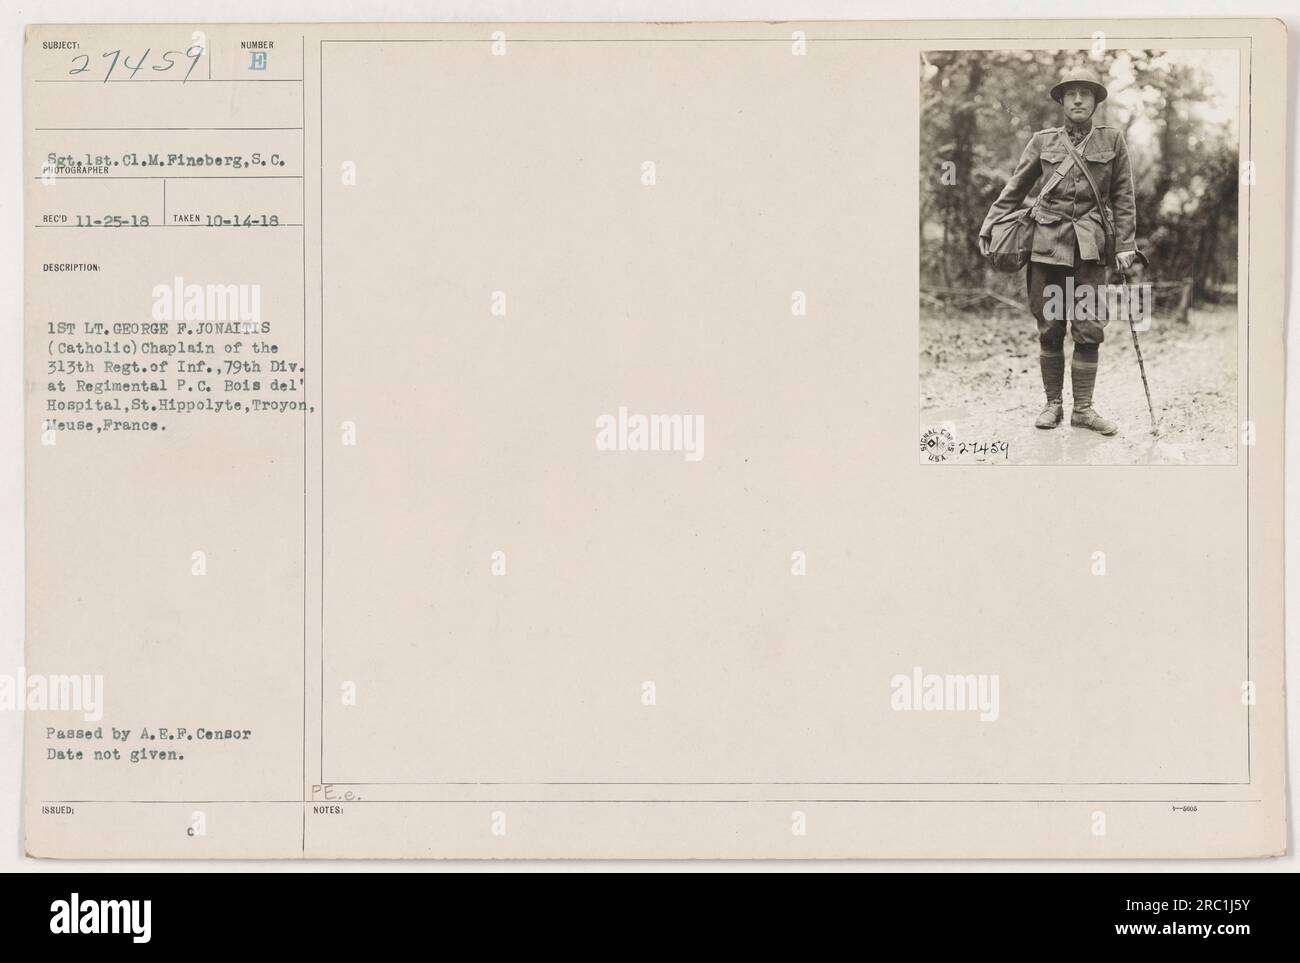 1ST LT. GEORGE F. JONAITIS, aumônier catholique du 313e régiment d'infanterie, 79e division, est vu au régimentaire P. C. Boia del Hospital à St. Hippolyte, Troyon, Meuse, France. Cette photographie a été prise le 14 octobre 1918 par le sergent de 1e classe M. Fineberg et a été approuvée par le censeur de l'A.E.F. Banque D'Images